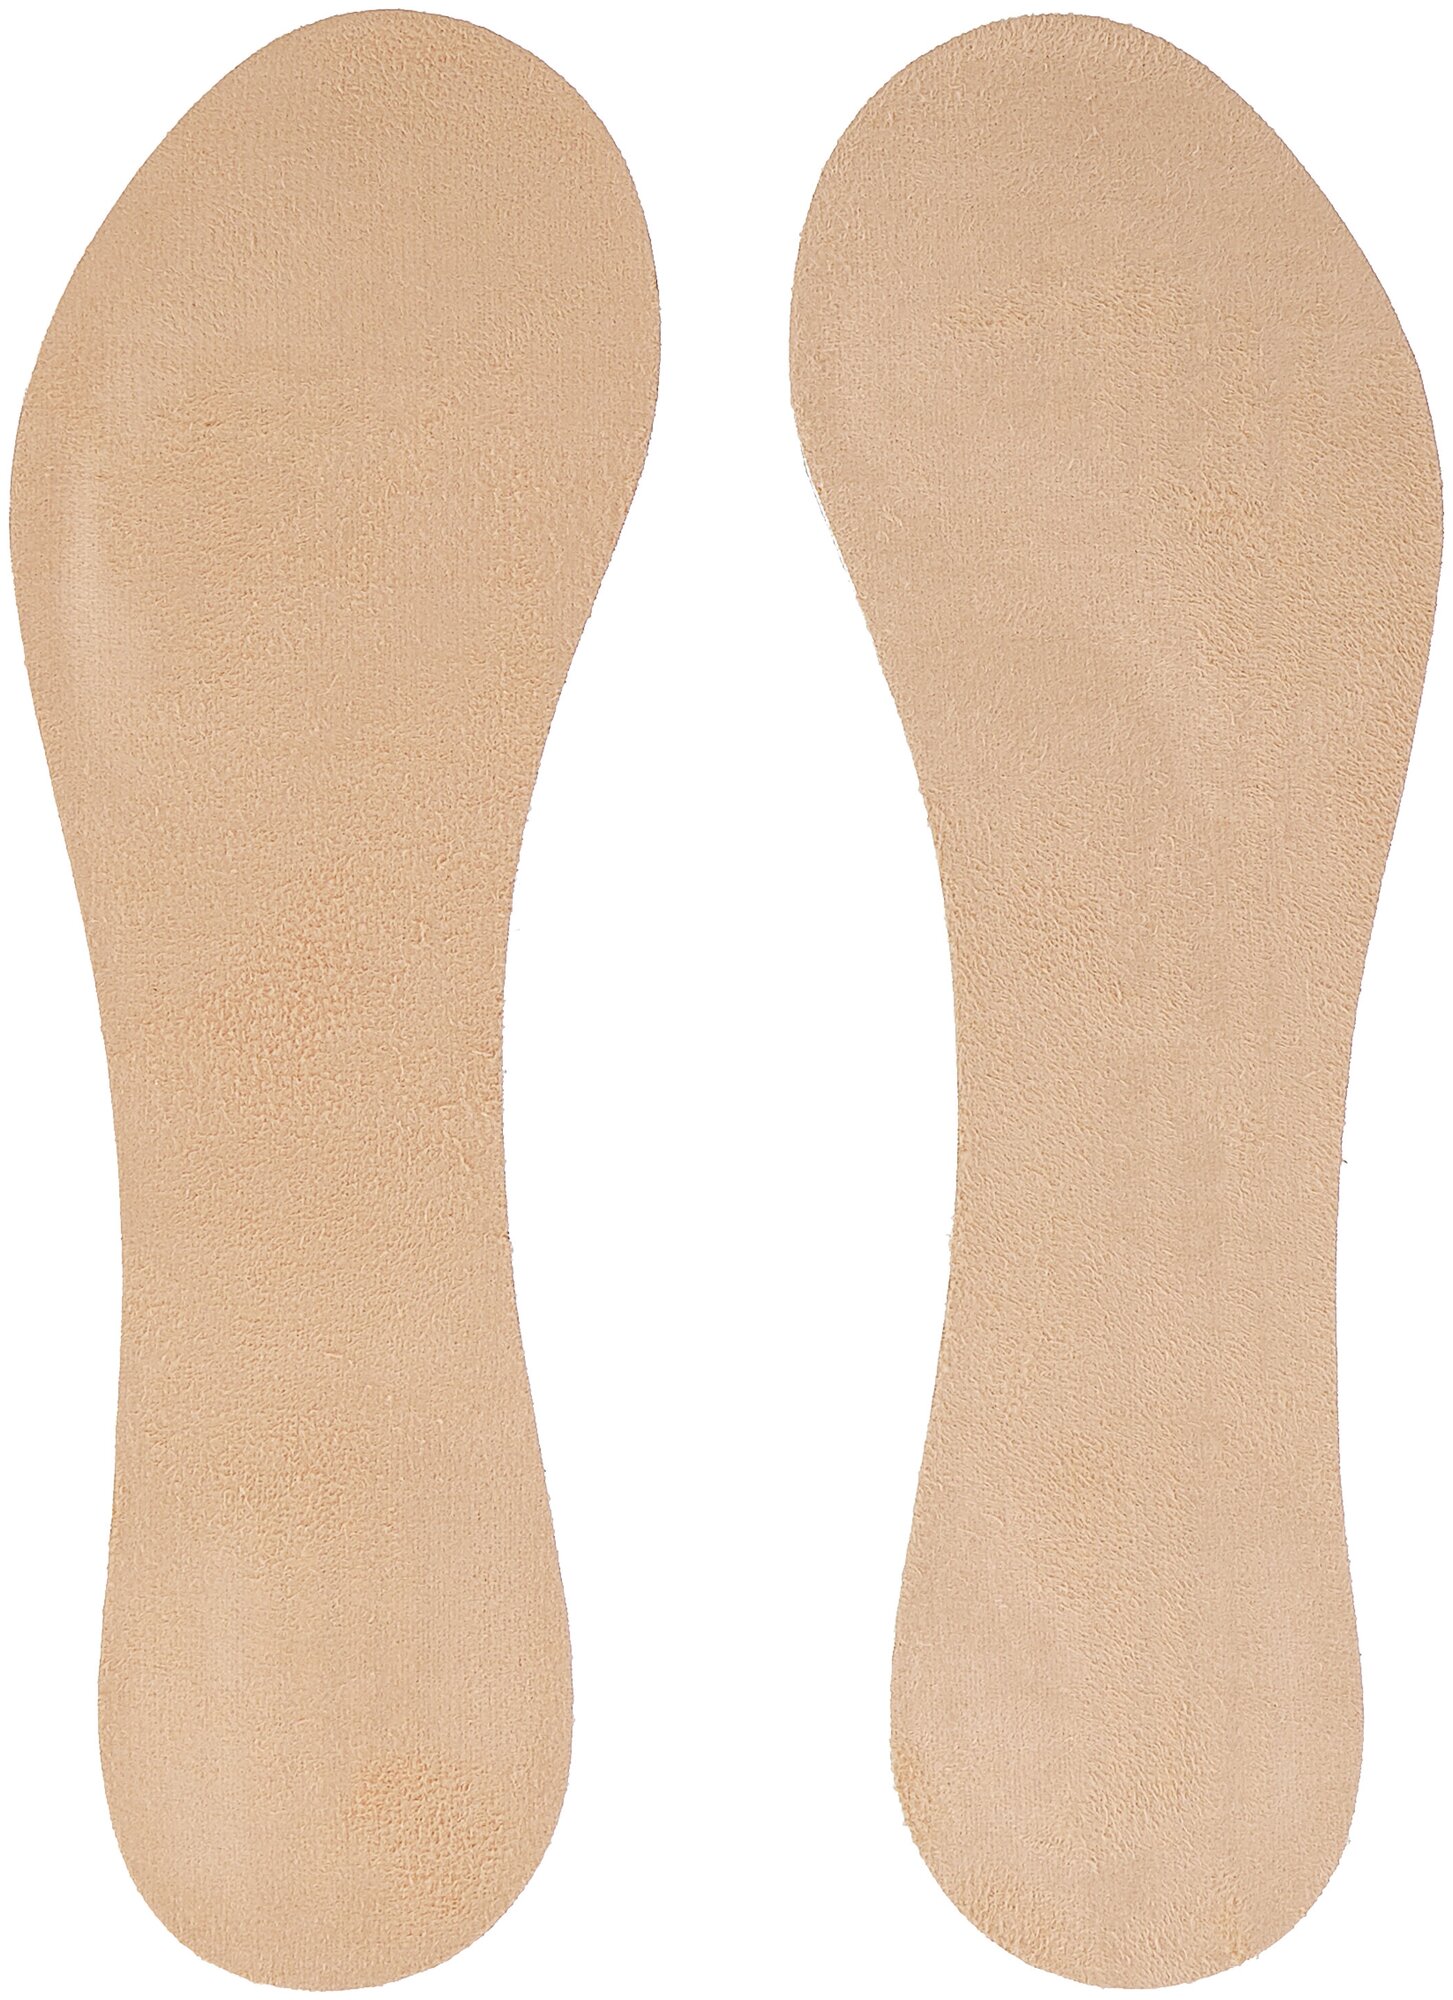 SALTON Гелевые стельки с микрофиброй Feet Comfort, цвет: бежевый